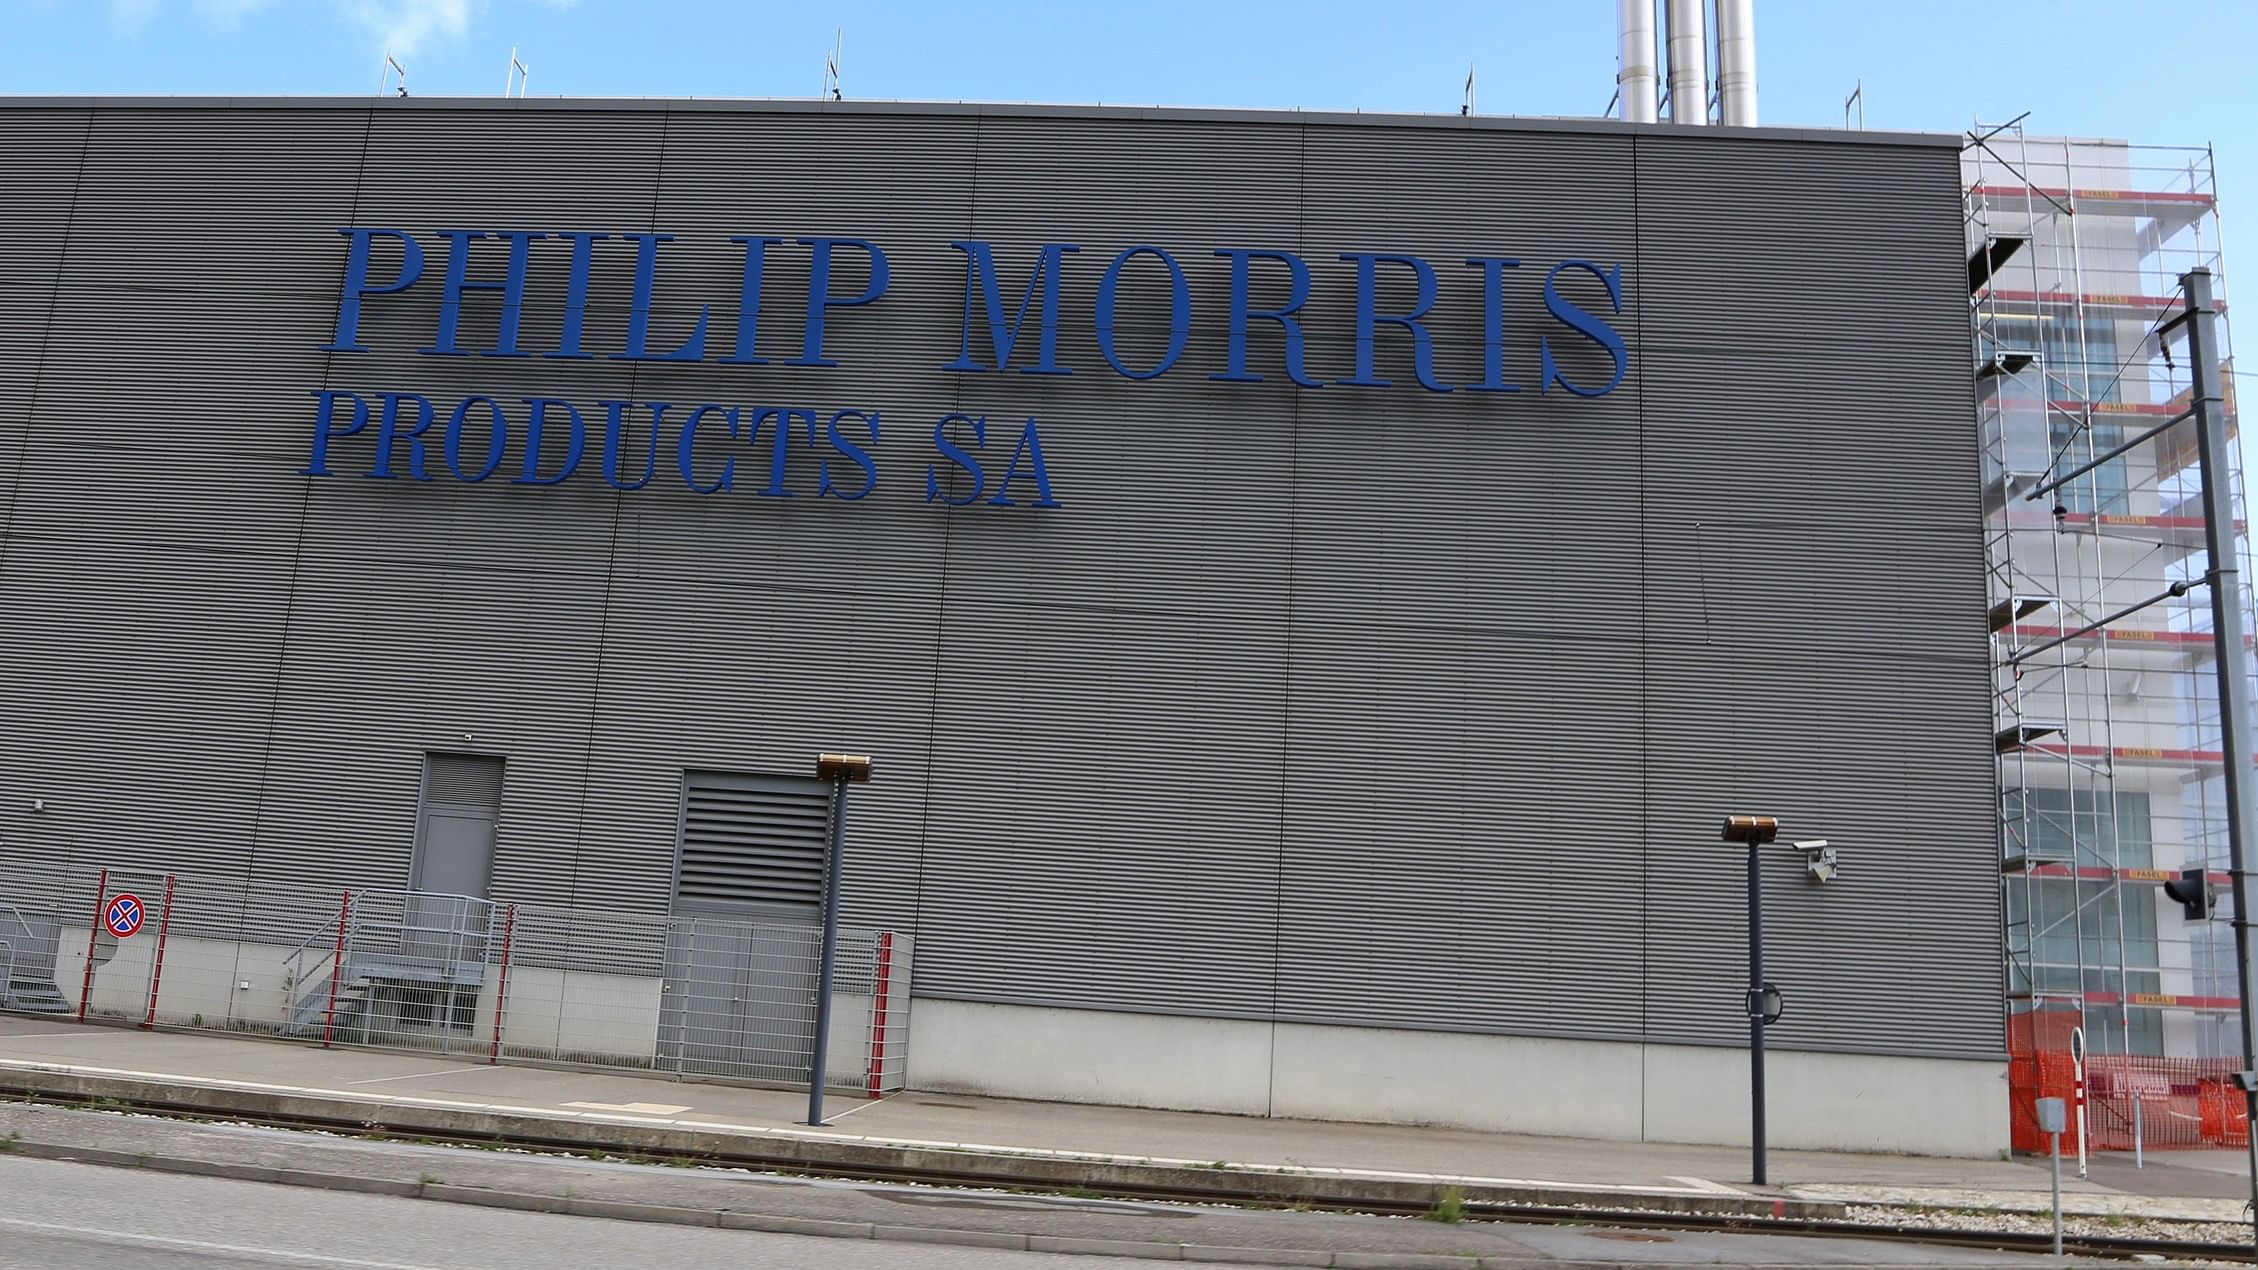 <div class="paragraphs"><p>Phillip Morris factory.&nbsp;</p></div>